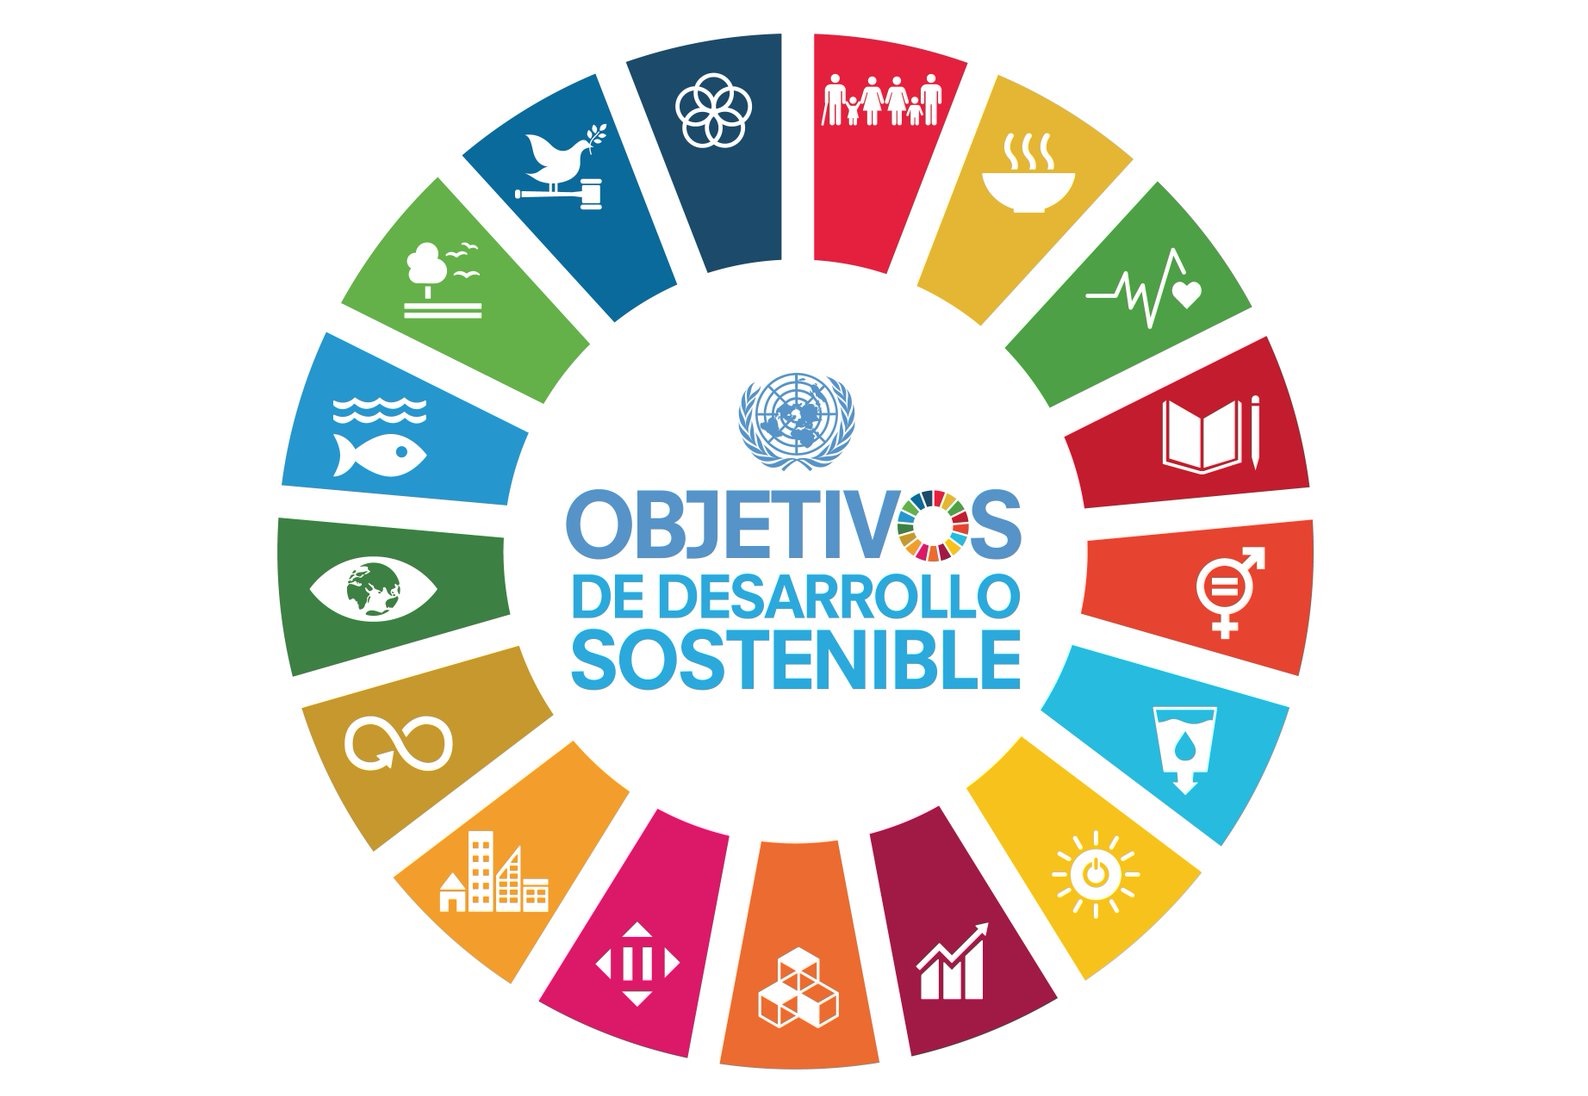 Objetivos de Desarrollo Sostenible - Agenda 2030